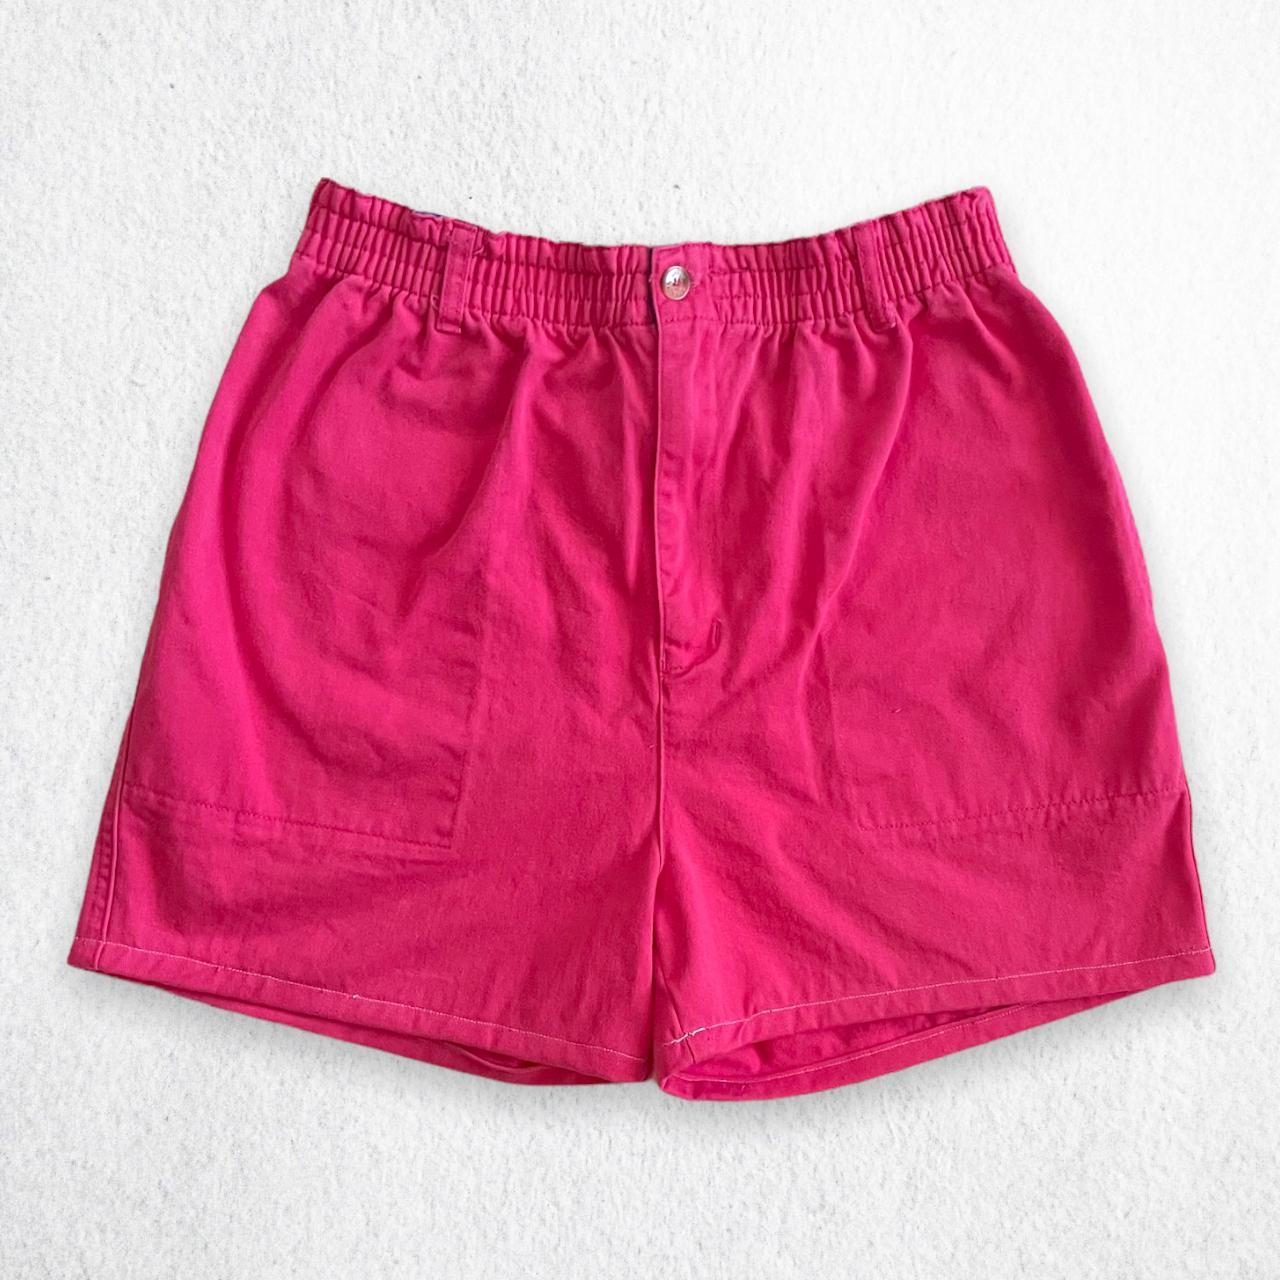 Regatta Women's Pink Shorts